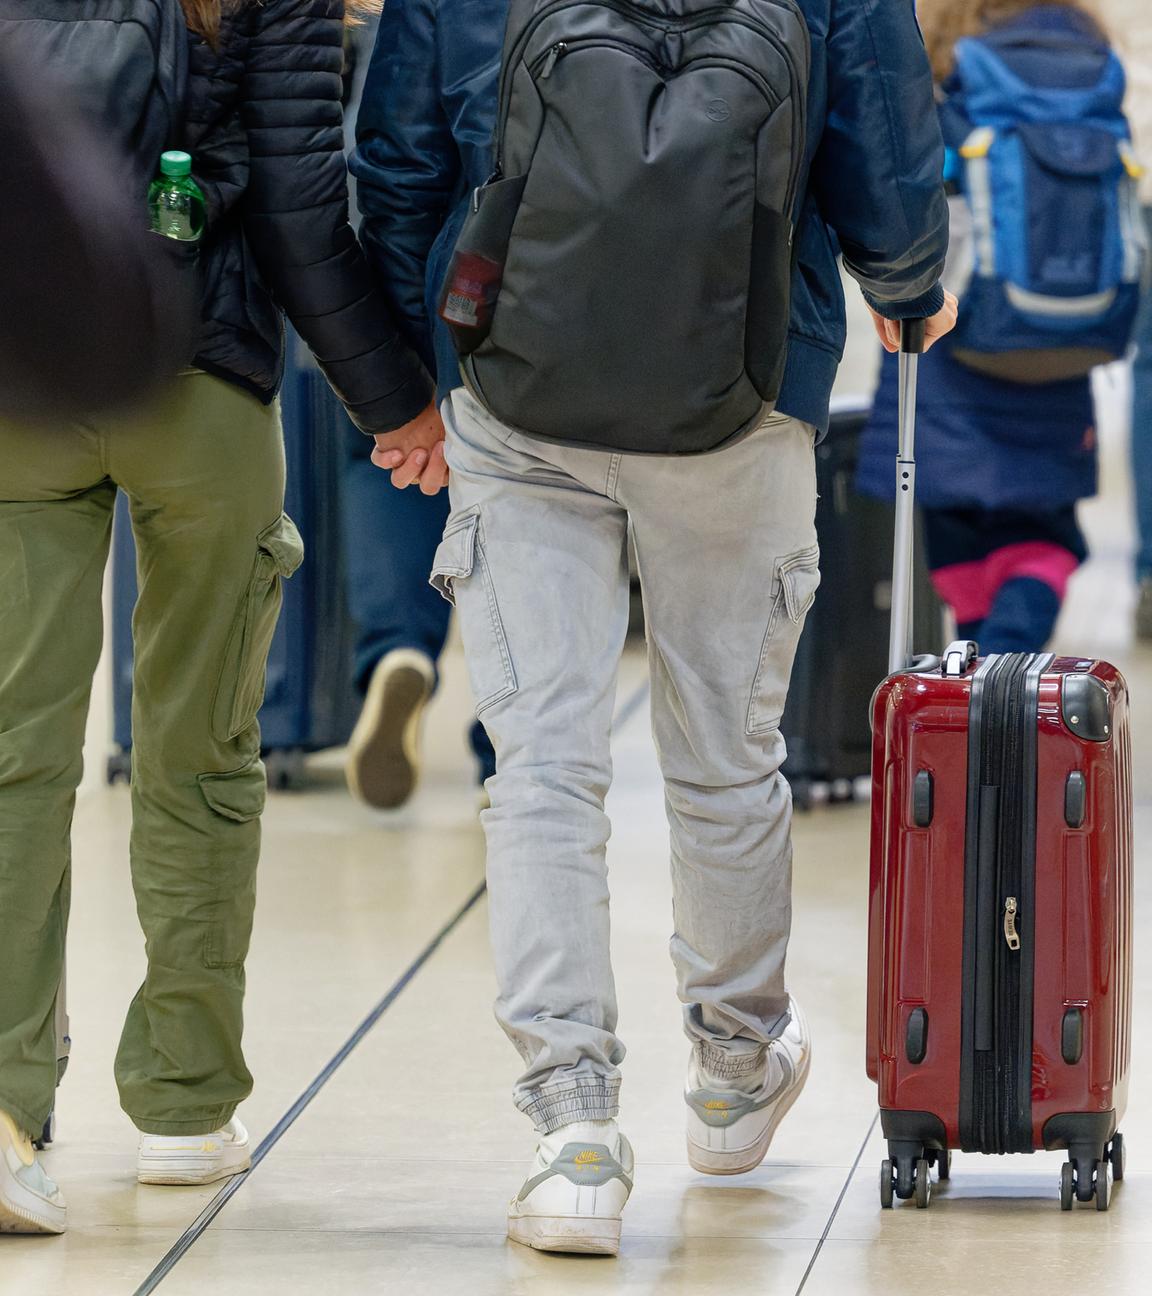 Reisenden gehen im Flughafen Köln/Bonn zu ihrem Gate.